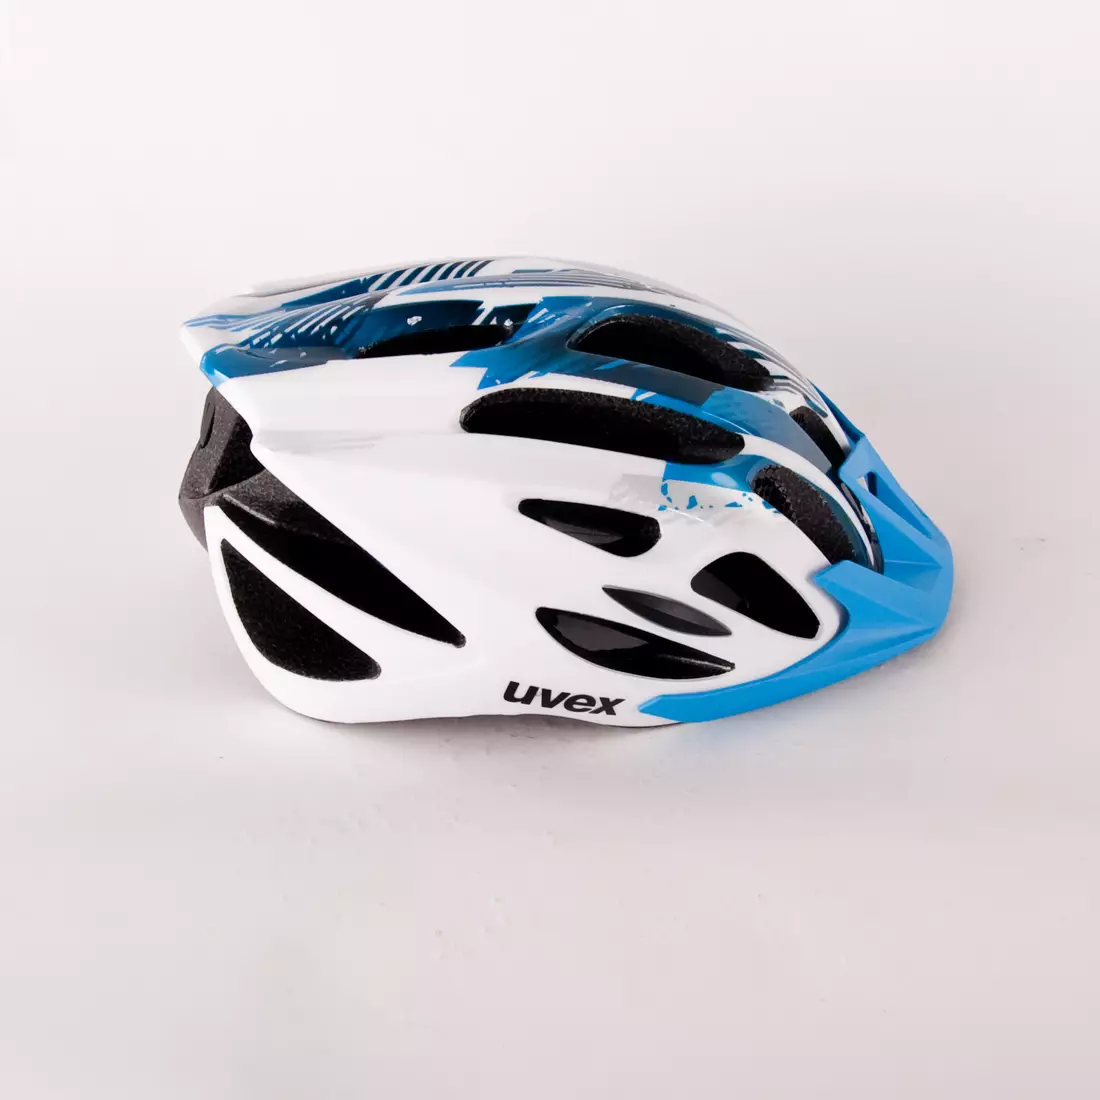 Cască de bicicletă Uvex Flash 4109660117 white/blue